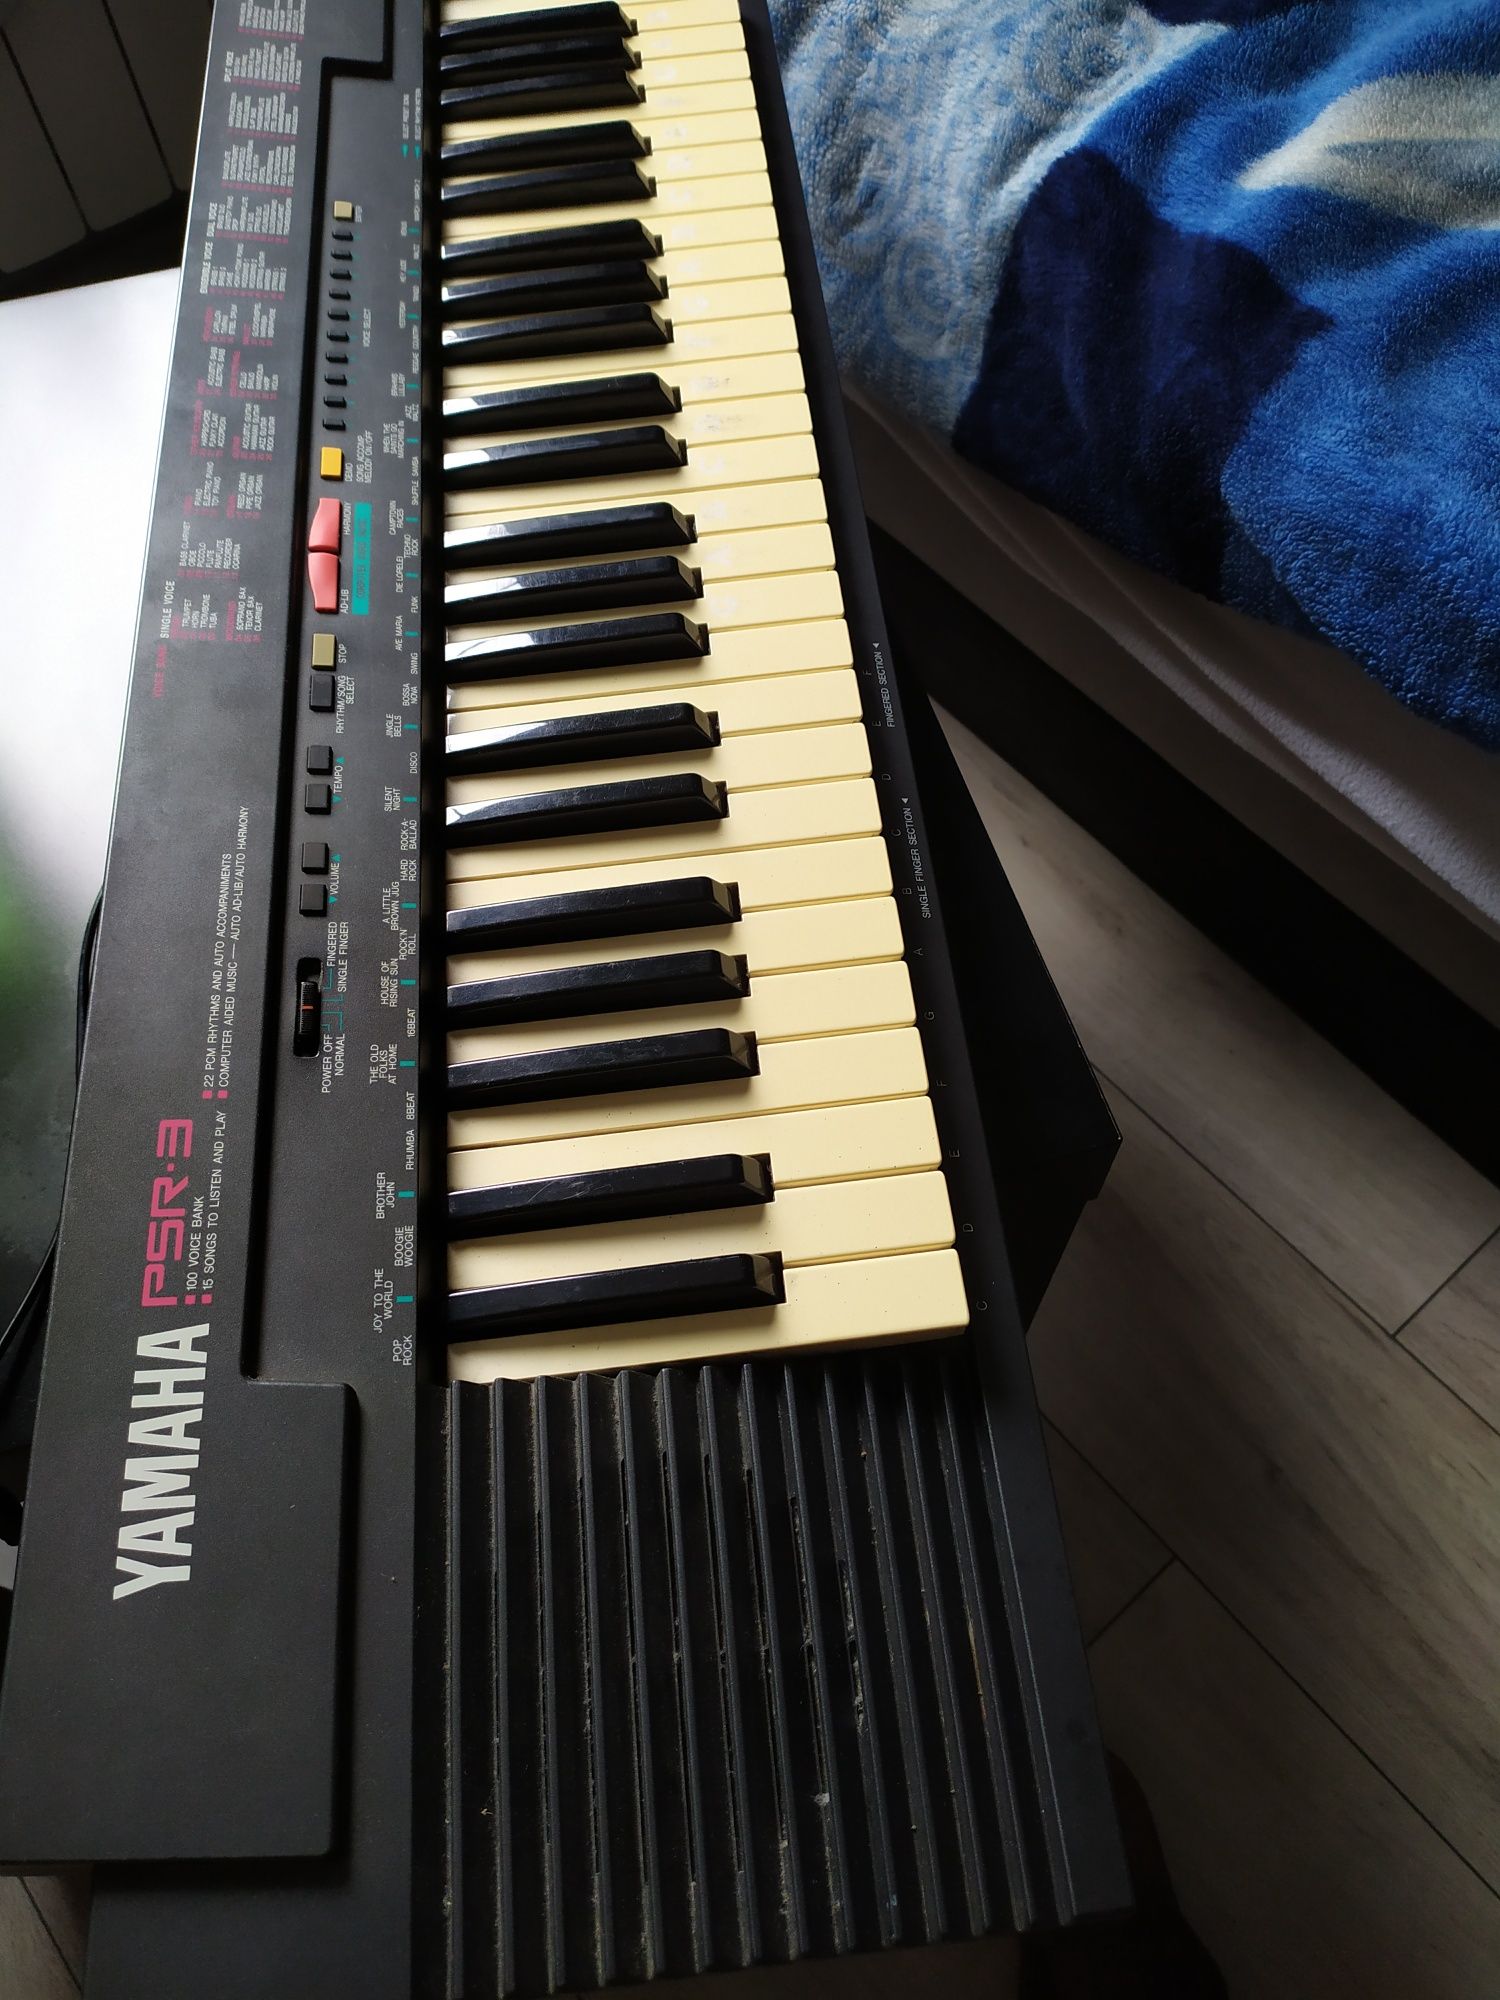 Keyboard Yamaha PSR-3